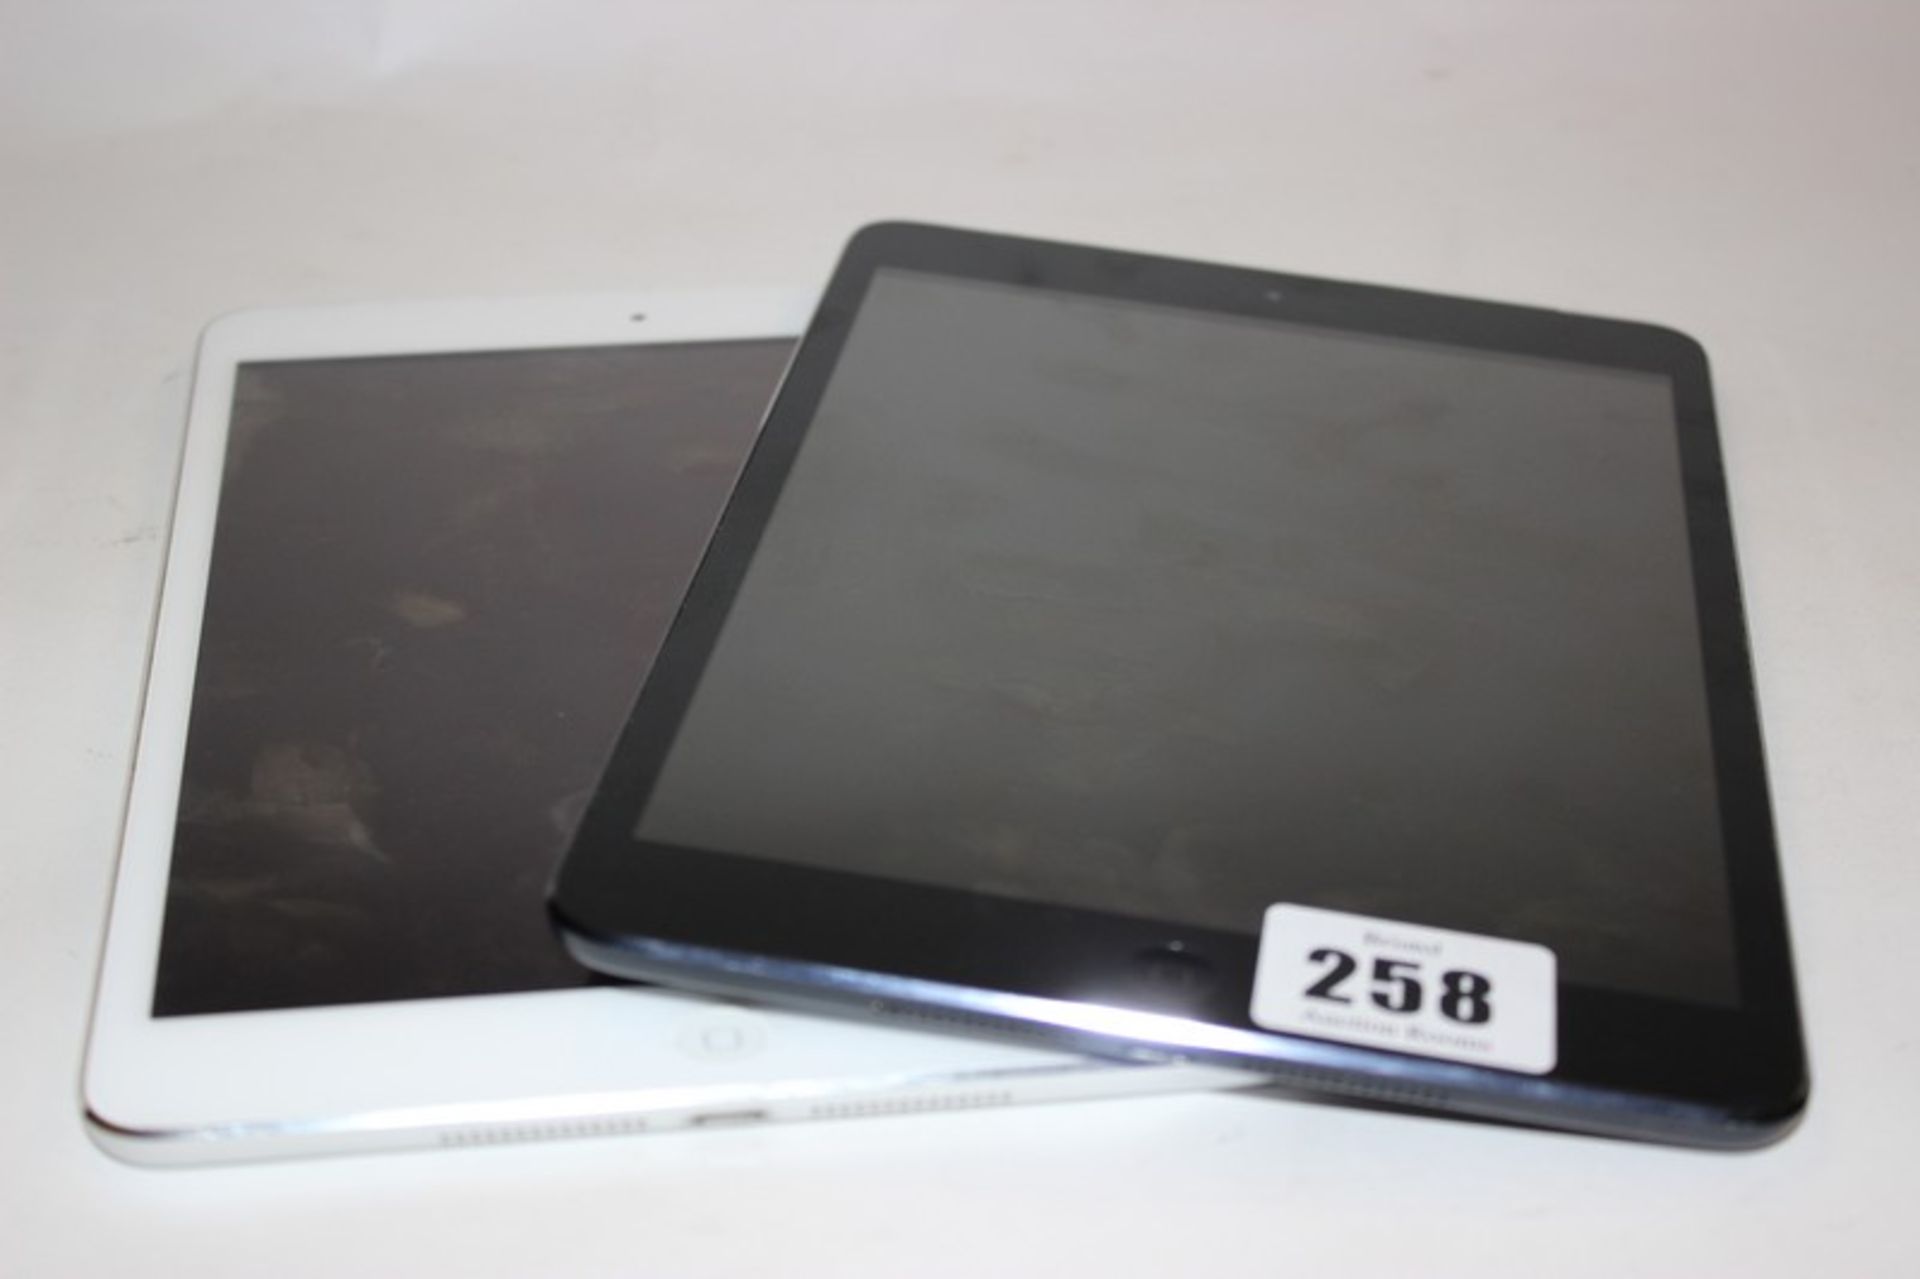 An iPad Mini 2 A1490 serial: F4KMG2C3FLMM and an iPad Mini A1455 serial: DLXJQ1HQF19L (Both